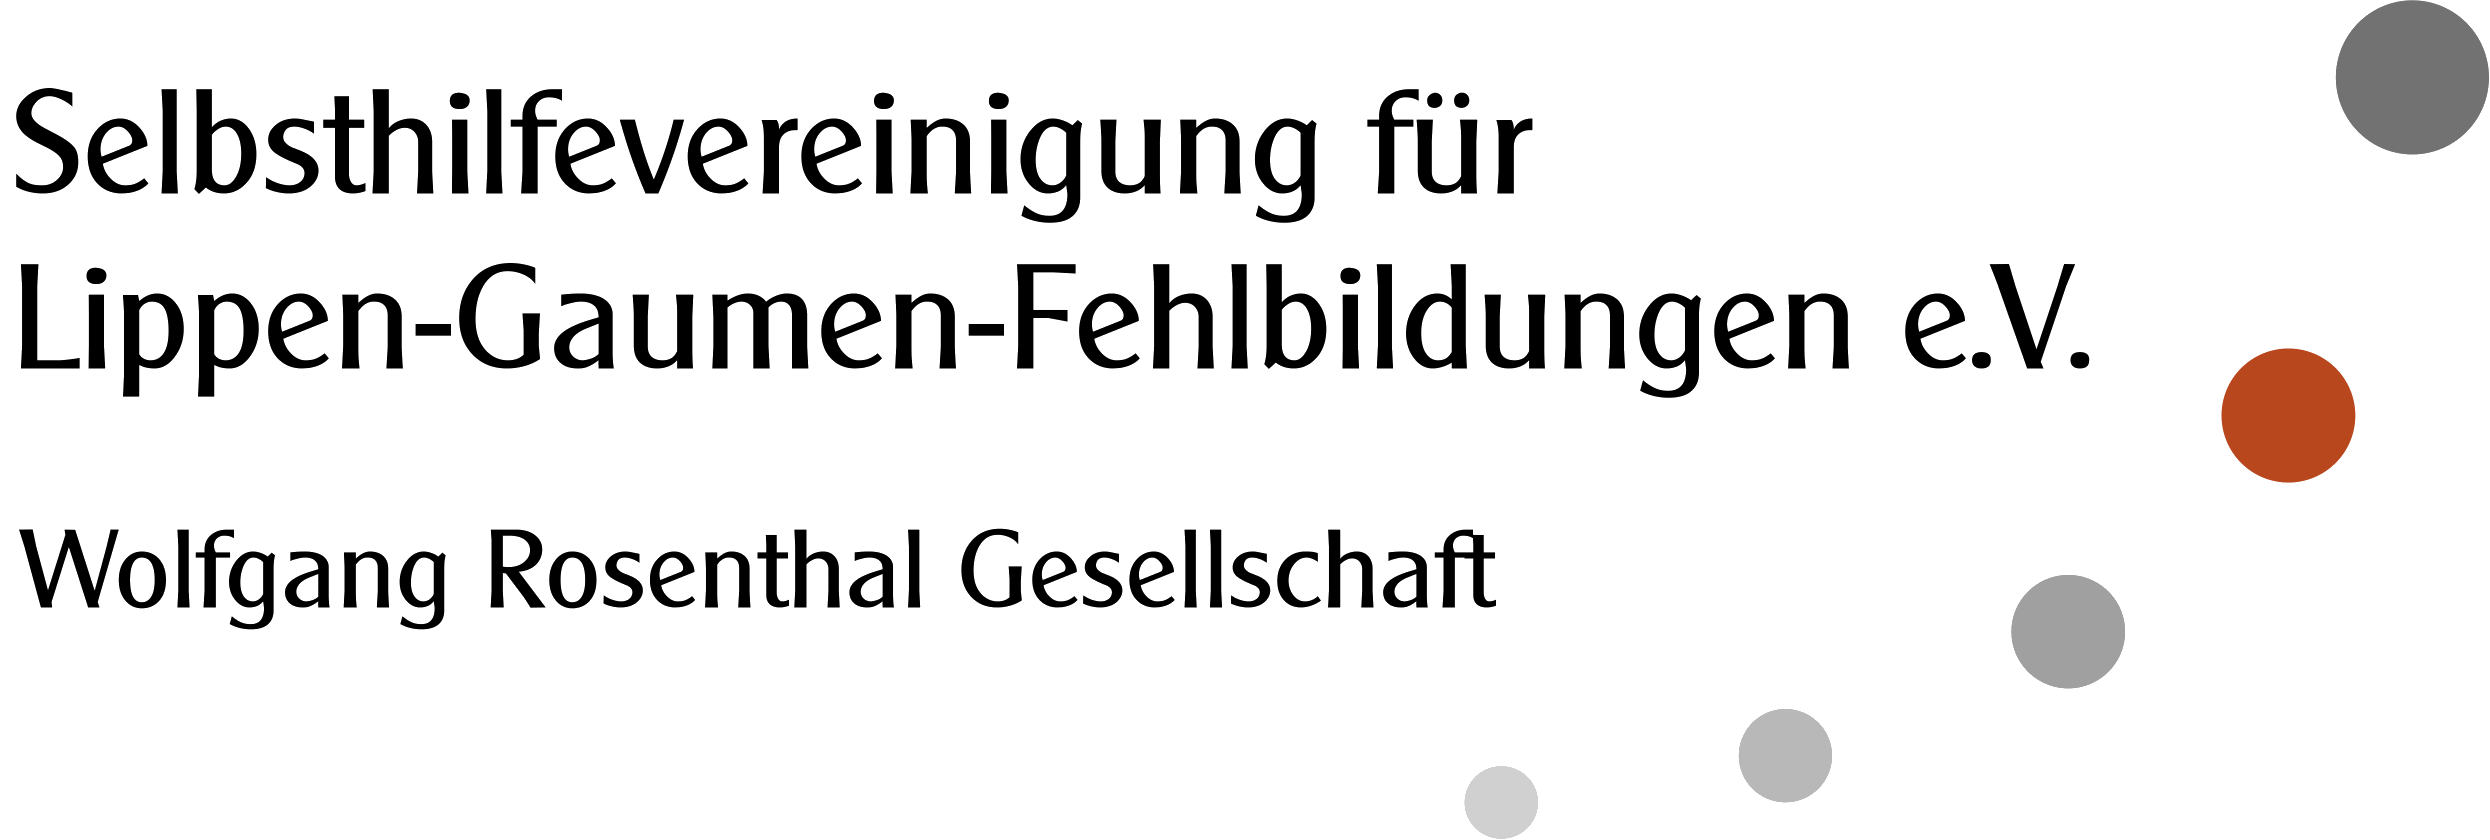 Logo des Selbsthilfevereinigung für Lippen-Gaumen Fehlbildungen e.V.